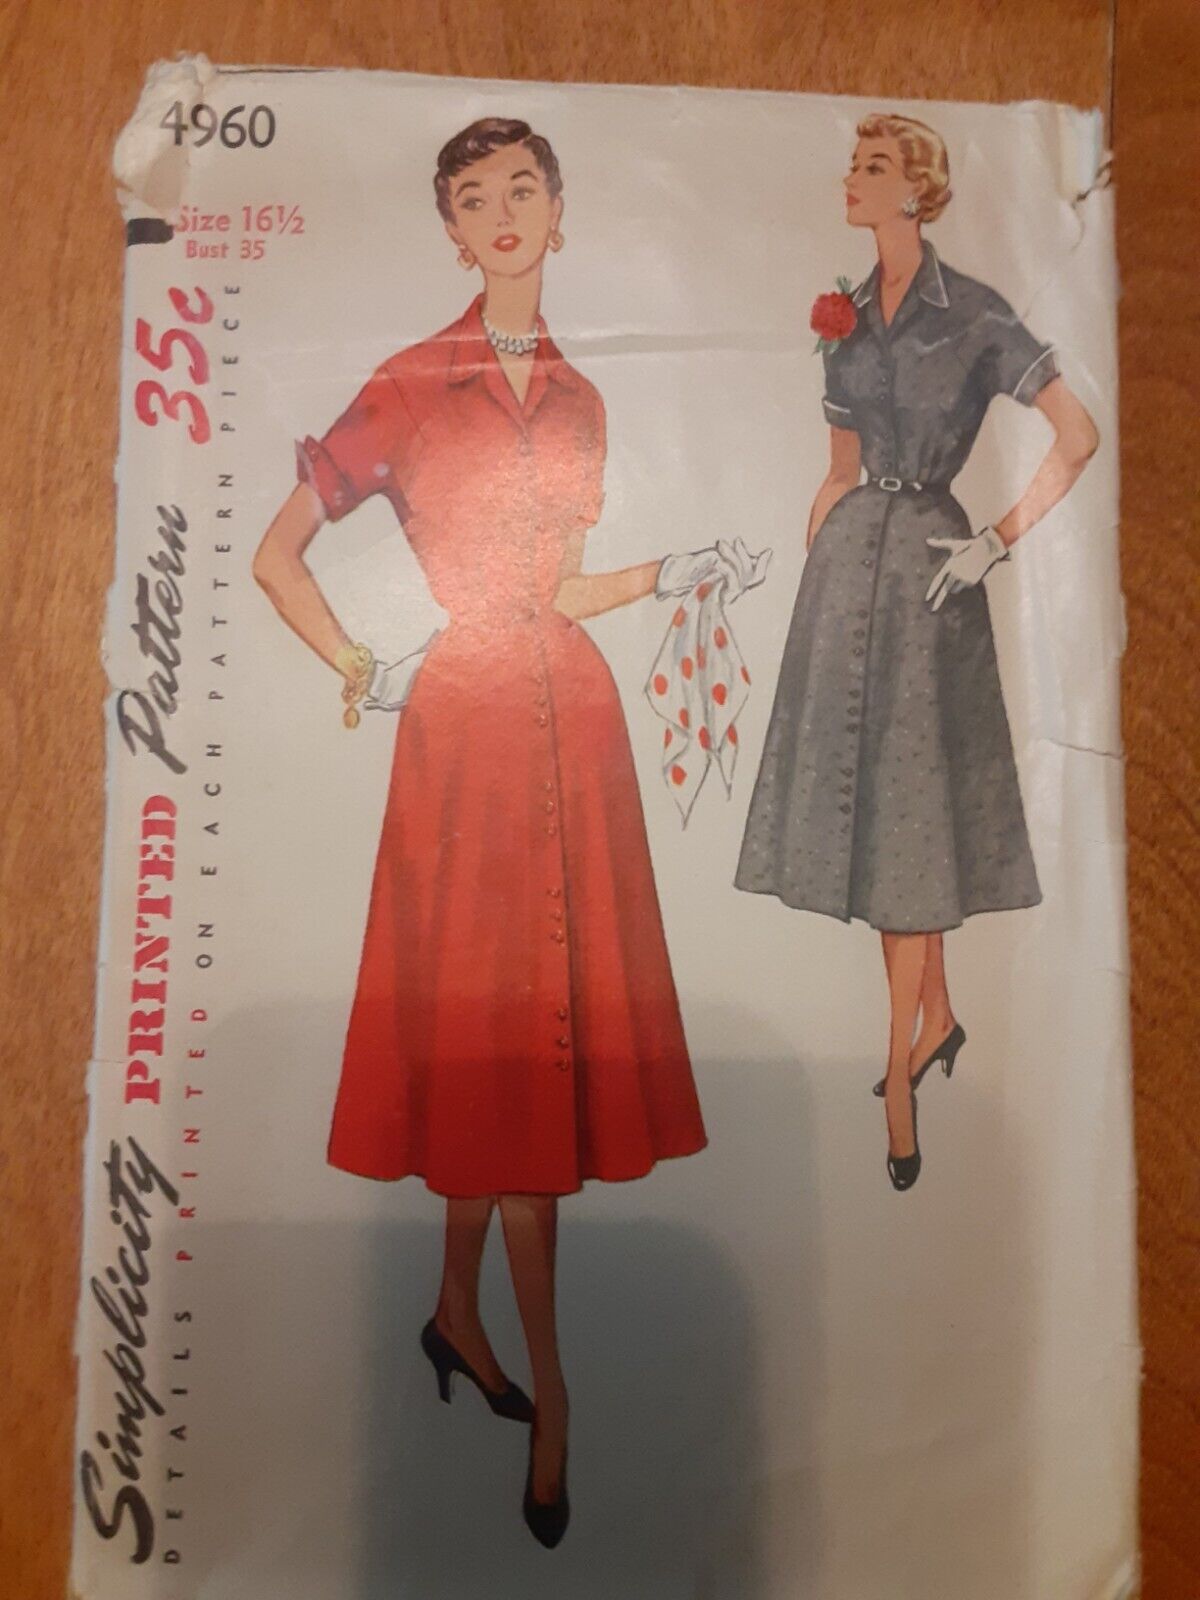 1954 Simplicity#4960 Miss HalfSize 16 1/2 Bust 35DressButton Front Flared Skirt 